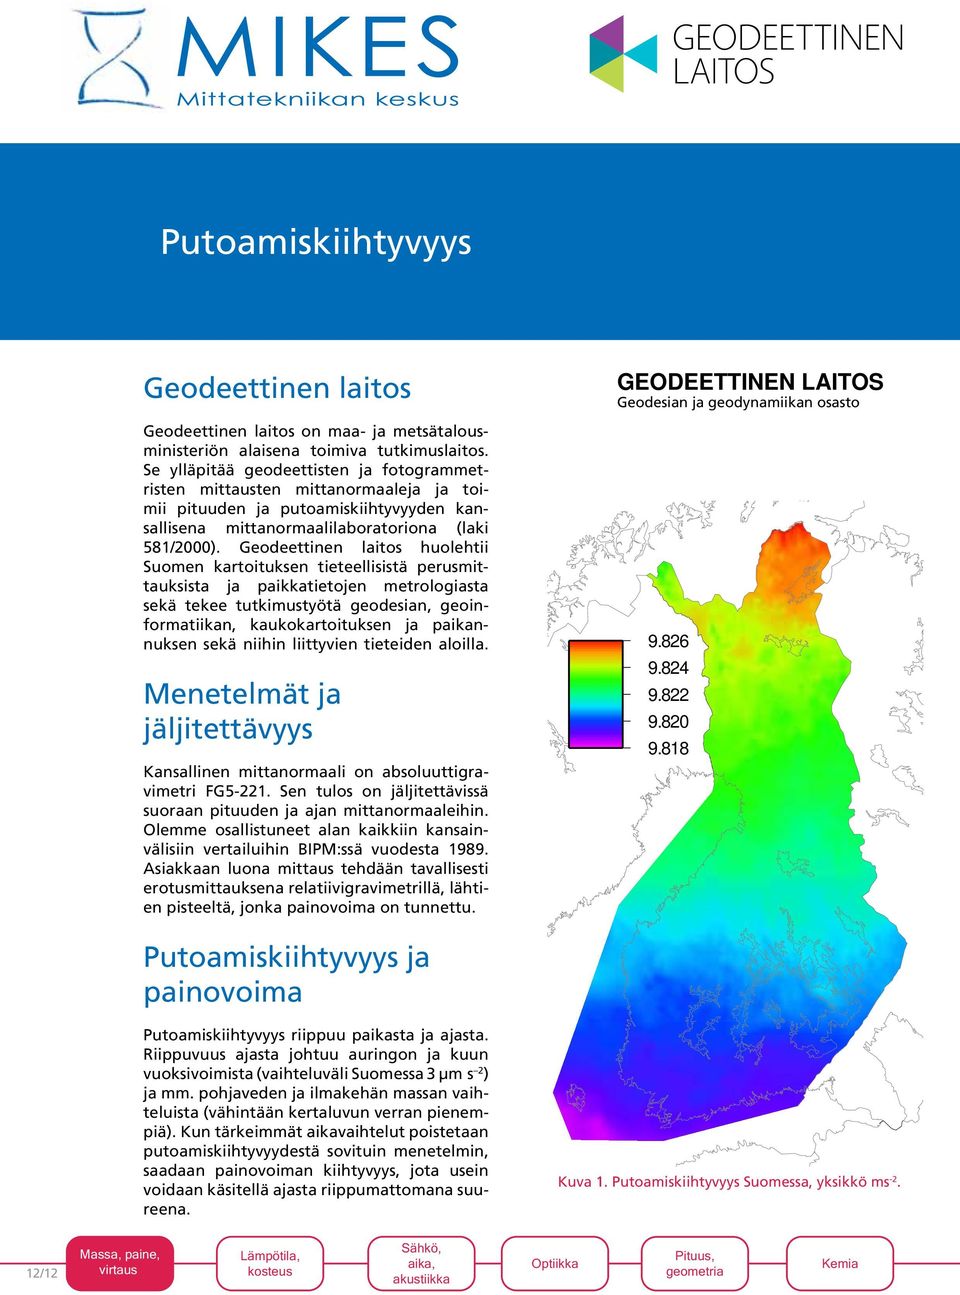 Geodeettinen laitos huolehtii Suomen kartoituksen tieteellisistä perusmittauksista ja paikkatietojen metrologiasta sekä tekee tutkimustyötä geodesian, geoinformatiikan, kaukokartoituksen ja